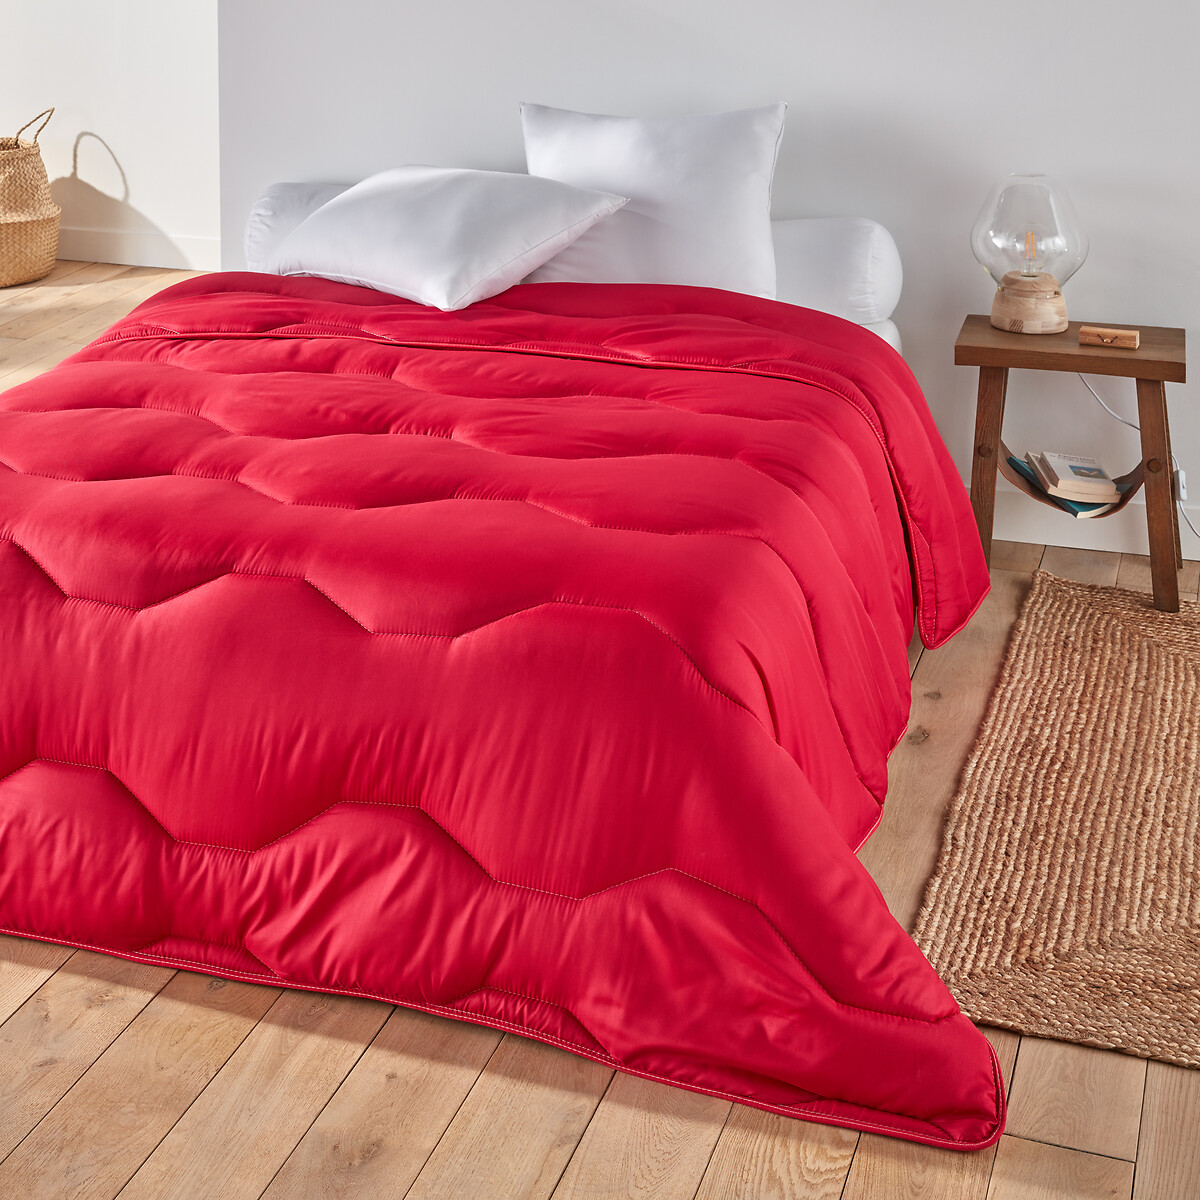 Одеяло La Redoute COLOR  полиэстера  гм 260 x 240 см красный, размер 260 x 240 см - фото 1